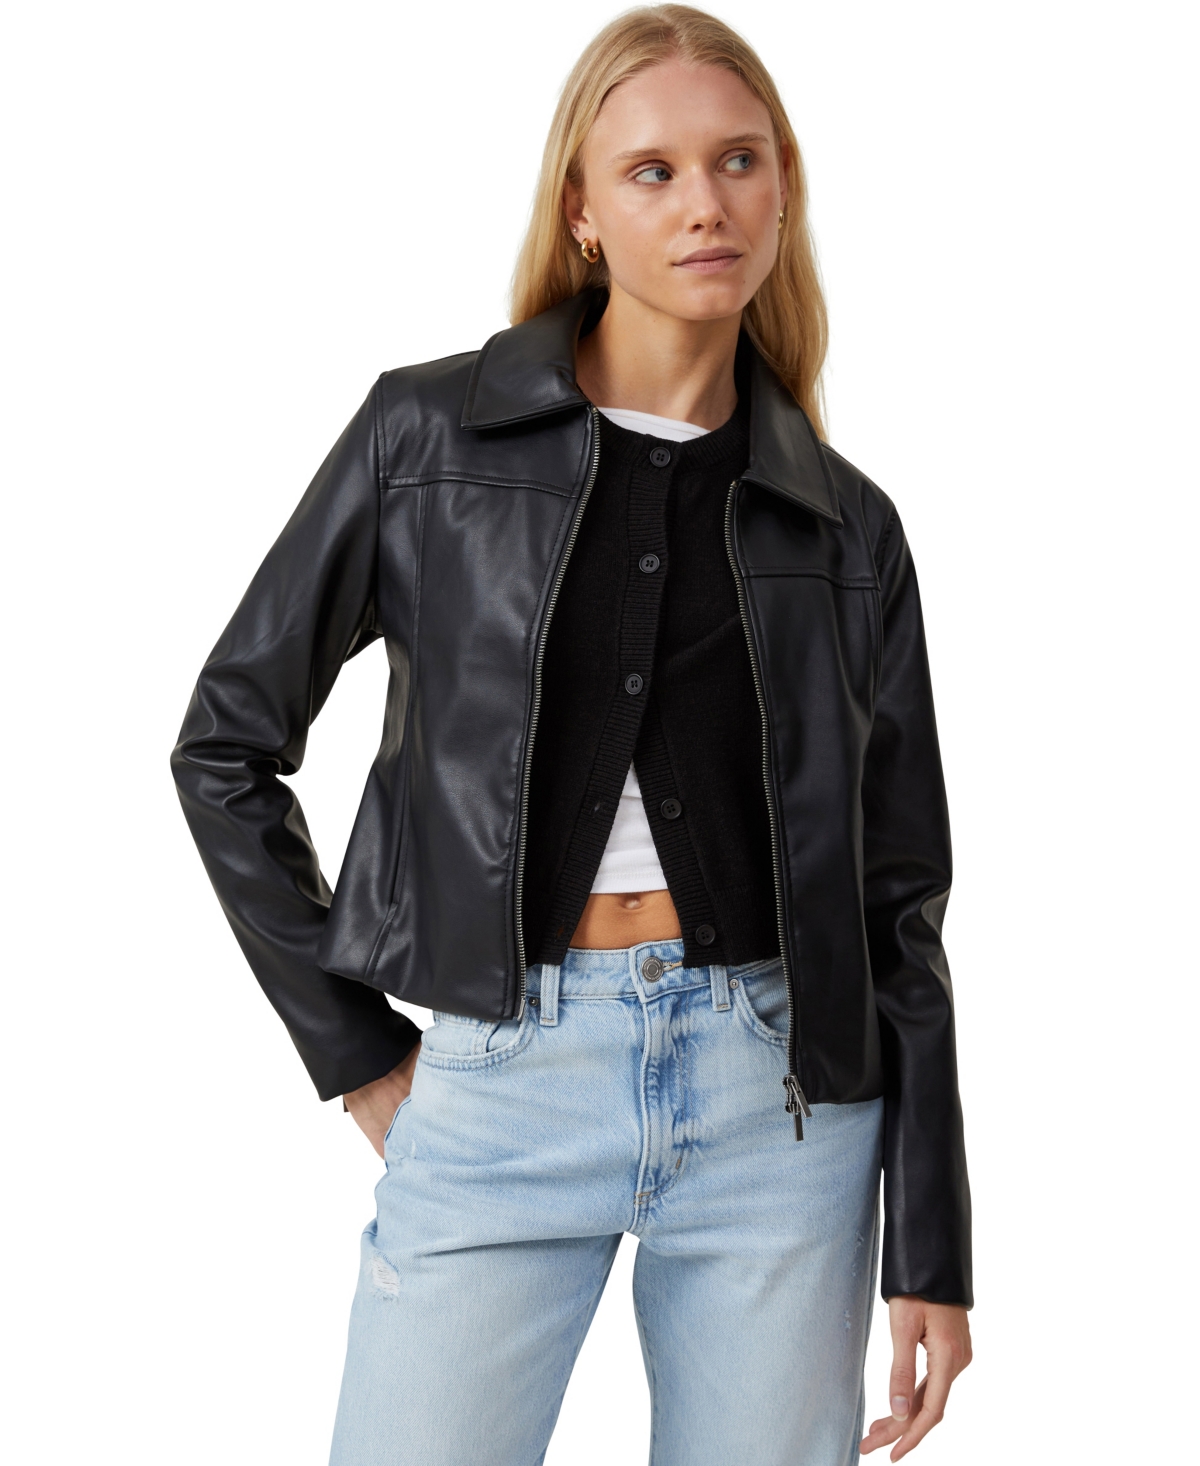 Women's Minimalist Faux Leather Jacket - Black